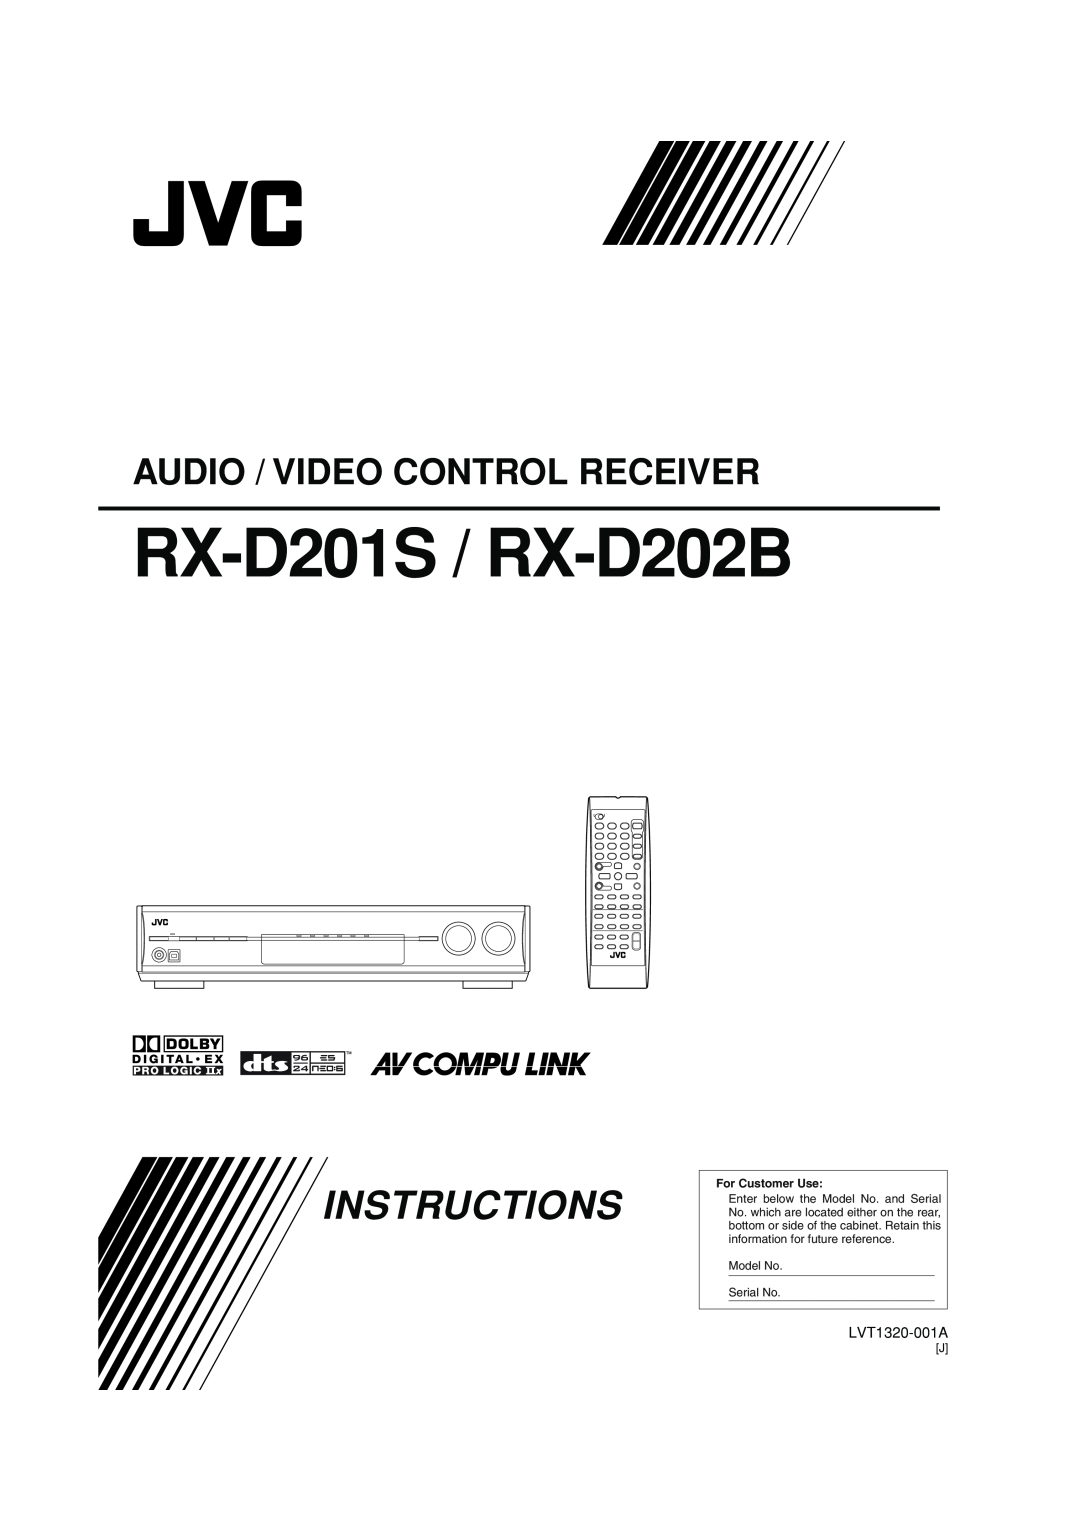 JVC manual RX-D201S / RX-D202B, Instructions, Audio / Video Control Receiver 